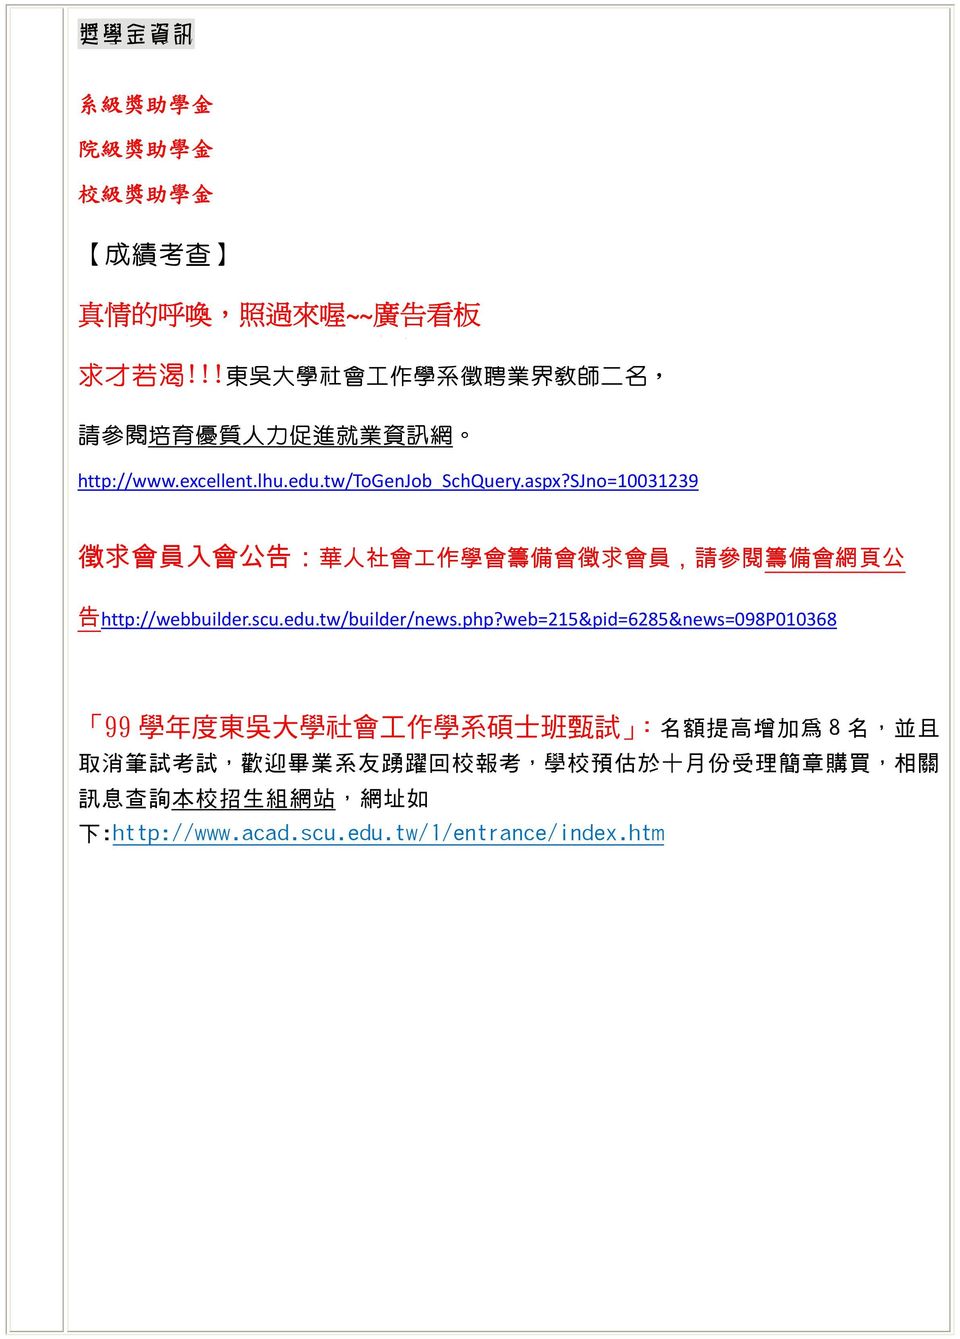 sjno=10031239 徵 求 會 員 入 會 公 告 : 華 人 社 會 工 作 學 會 籌 備 會 徵 求 會 員, 請 參 閱 籌 備 會 網 頁 公 告 http://webbuilder.scu.edu.tw/builder/news.php?